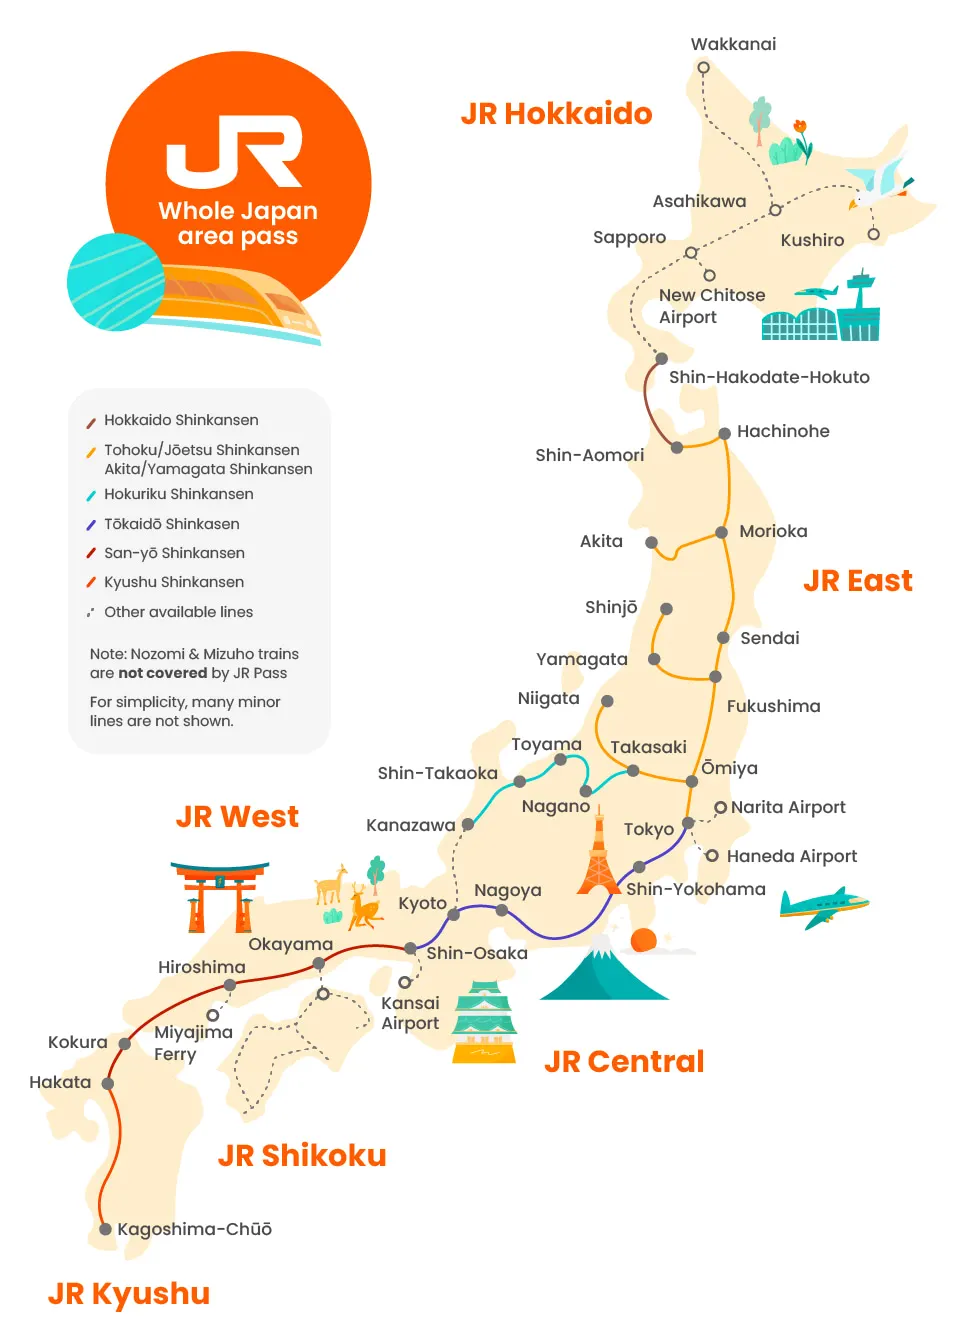 Jr Pass For Whole Japan - Key Takeaways